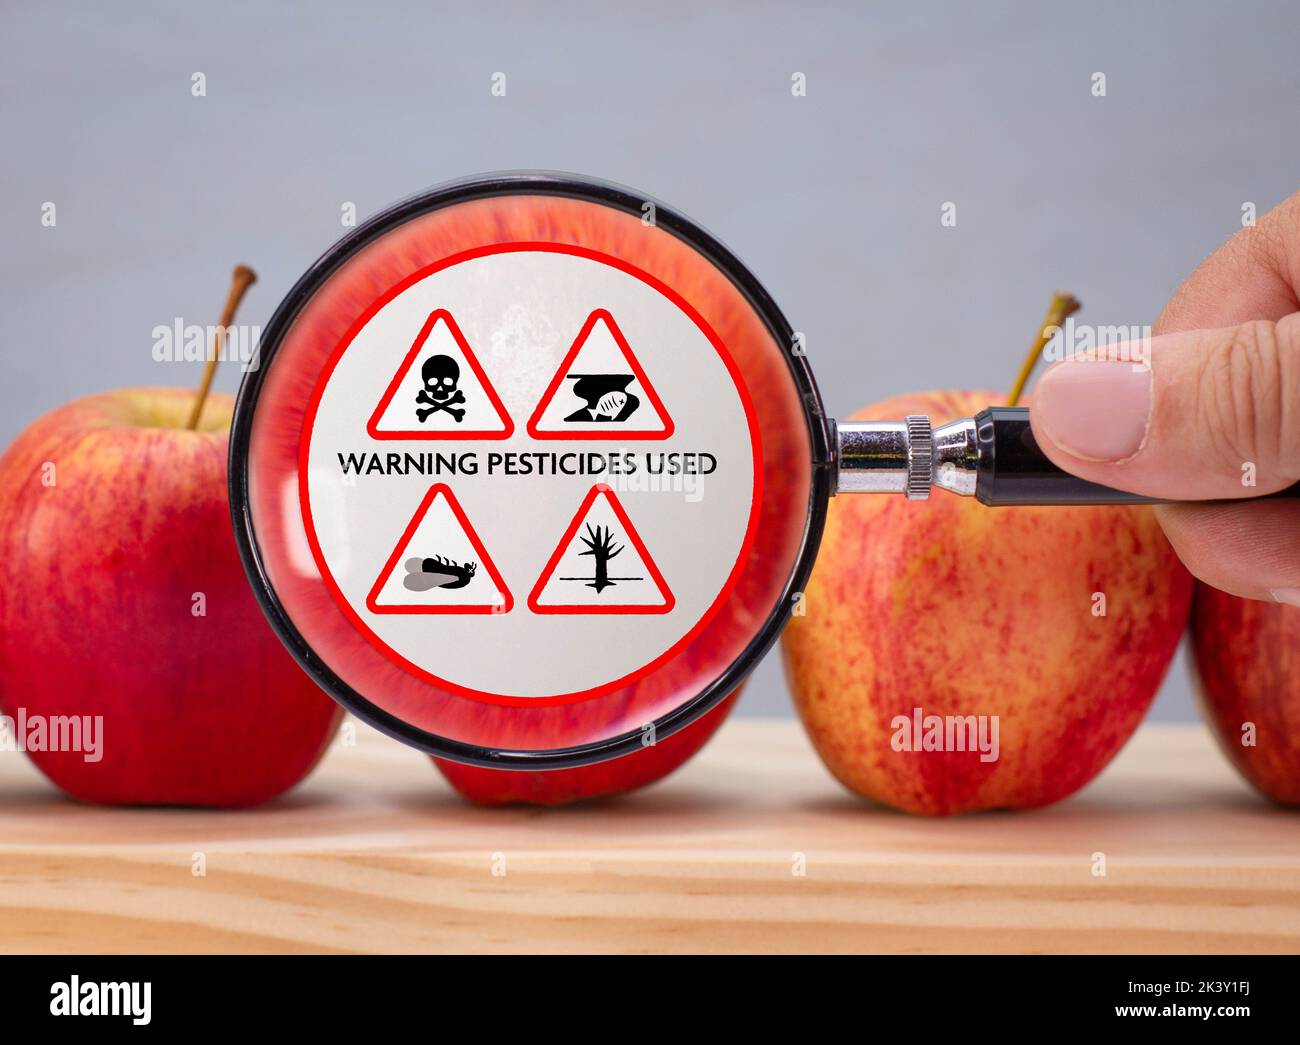 Etichetta ingrandita sulla mela, avvertenza dei danni ambientali causati dall'uso di pesticidi ed erbicidi nella produzione alimentare agricola industriale Foto Stock